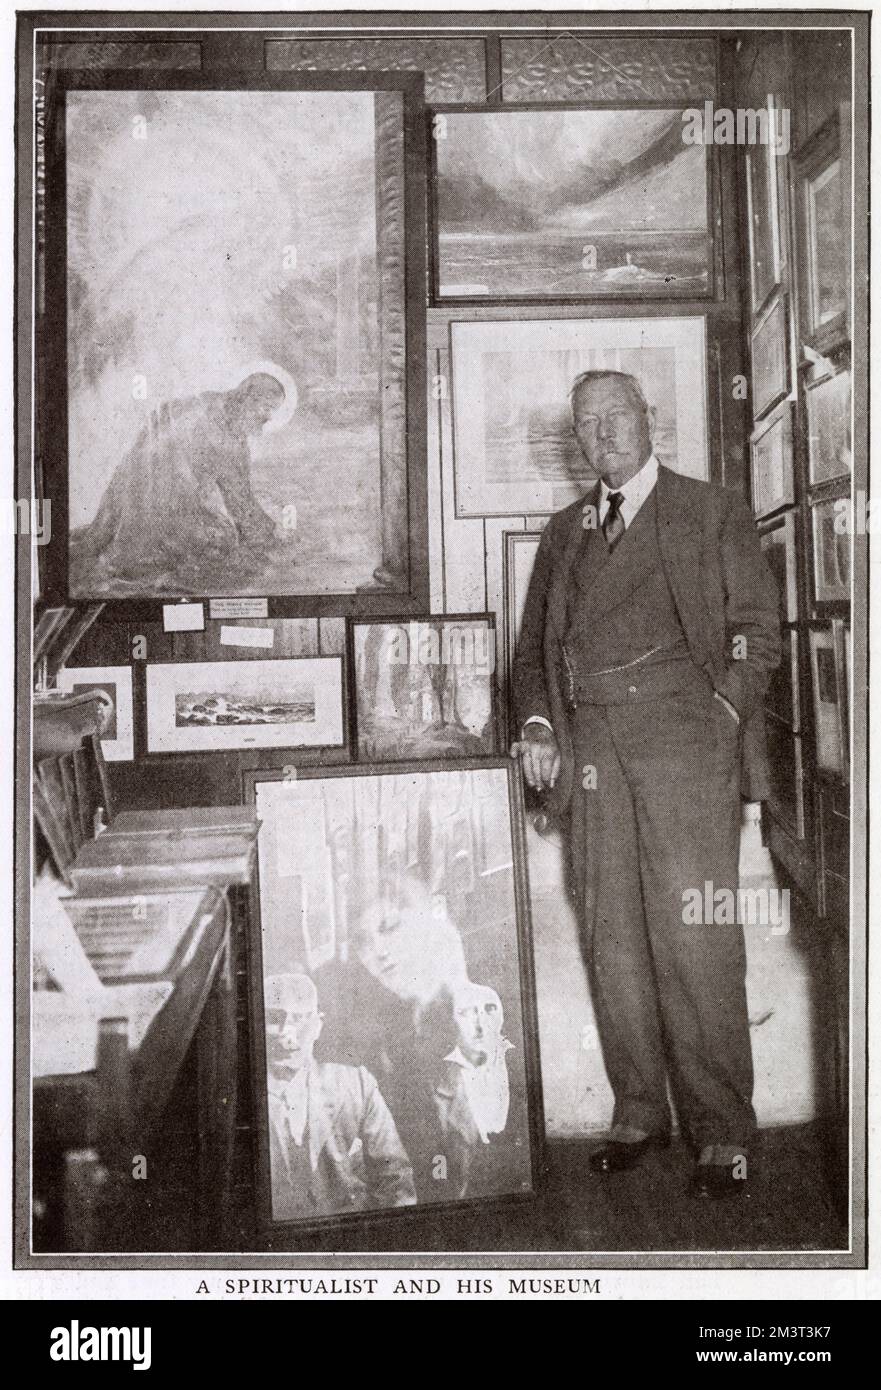 Sir Arthur Conan Doyle (1859 - 1930), con parte del suo museo spiritualistico a Westminster, tra cui la fotografia Sprit e le opere d'arte create mentre i creatori sperimentavano 'influenza psichica'. Data: 1928 Foto Stock